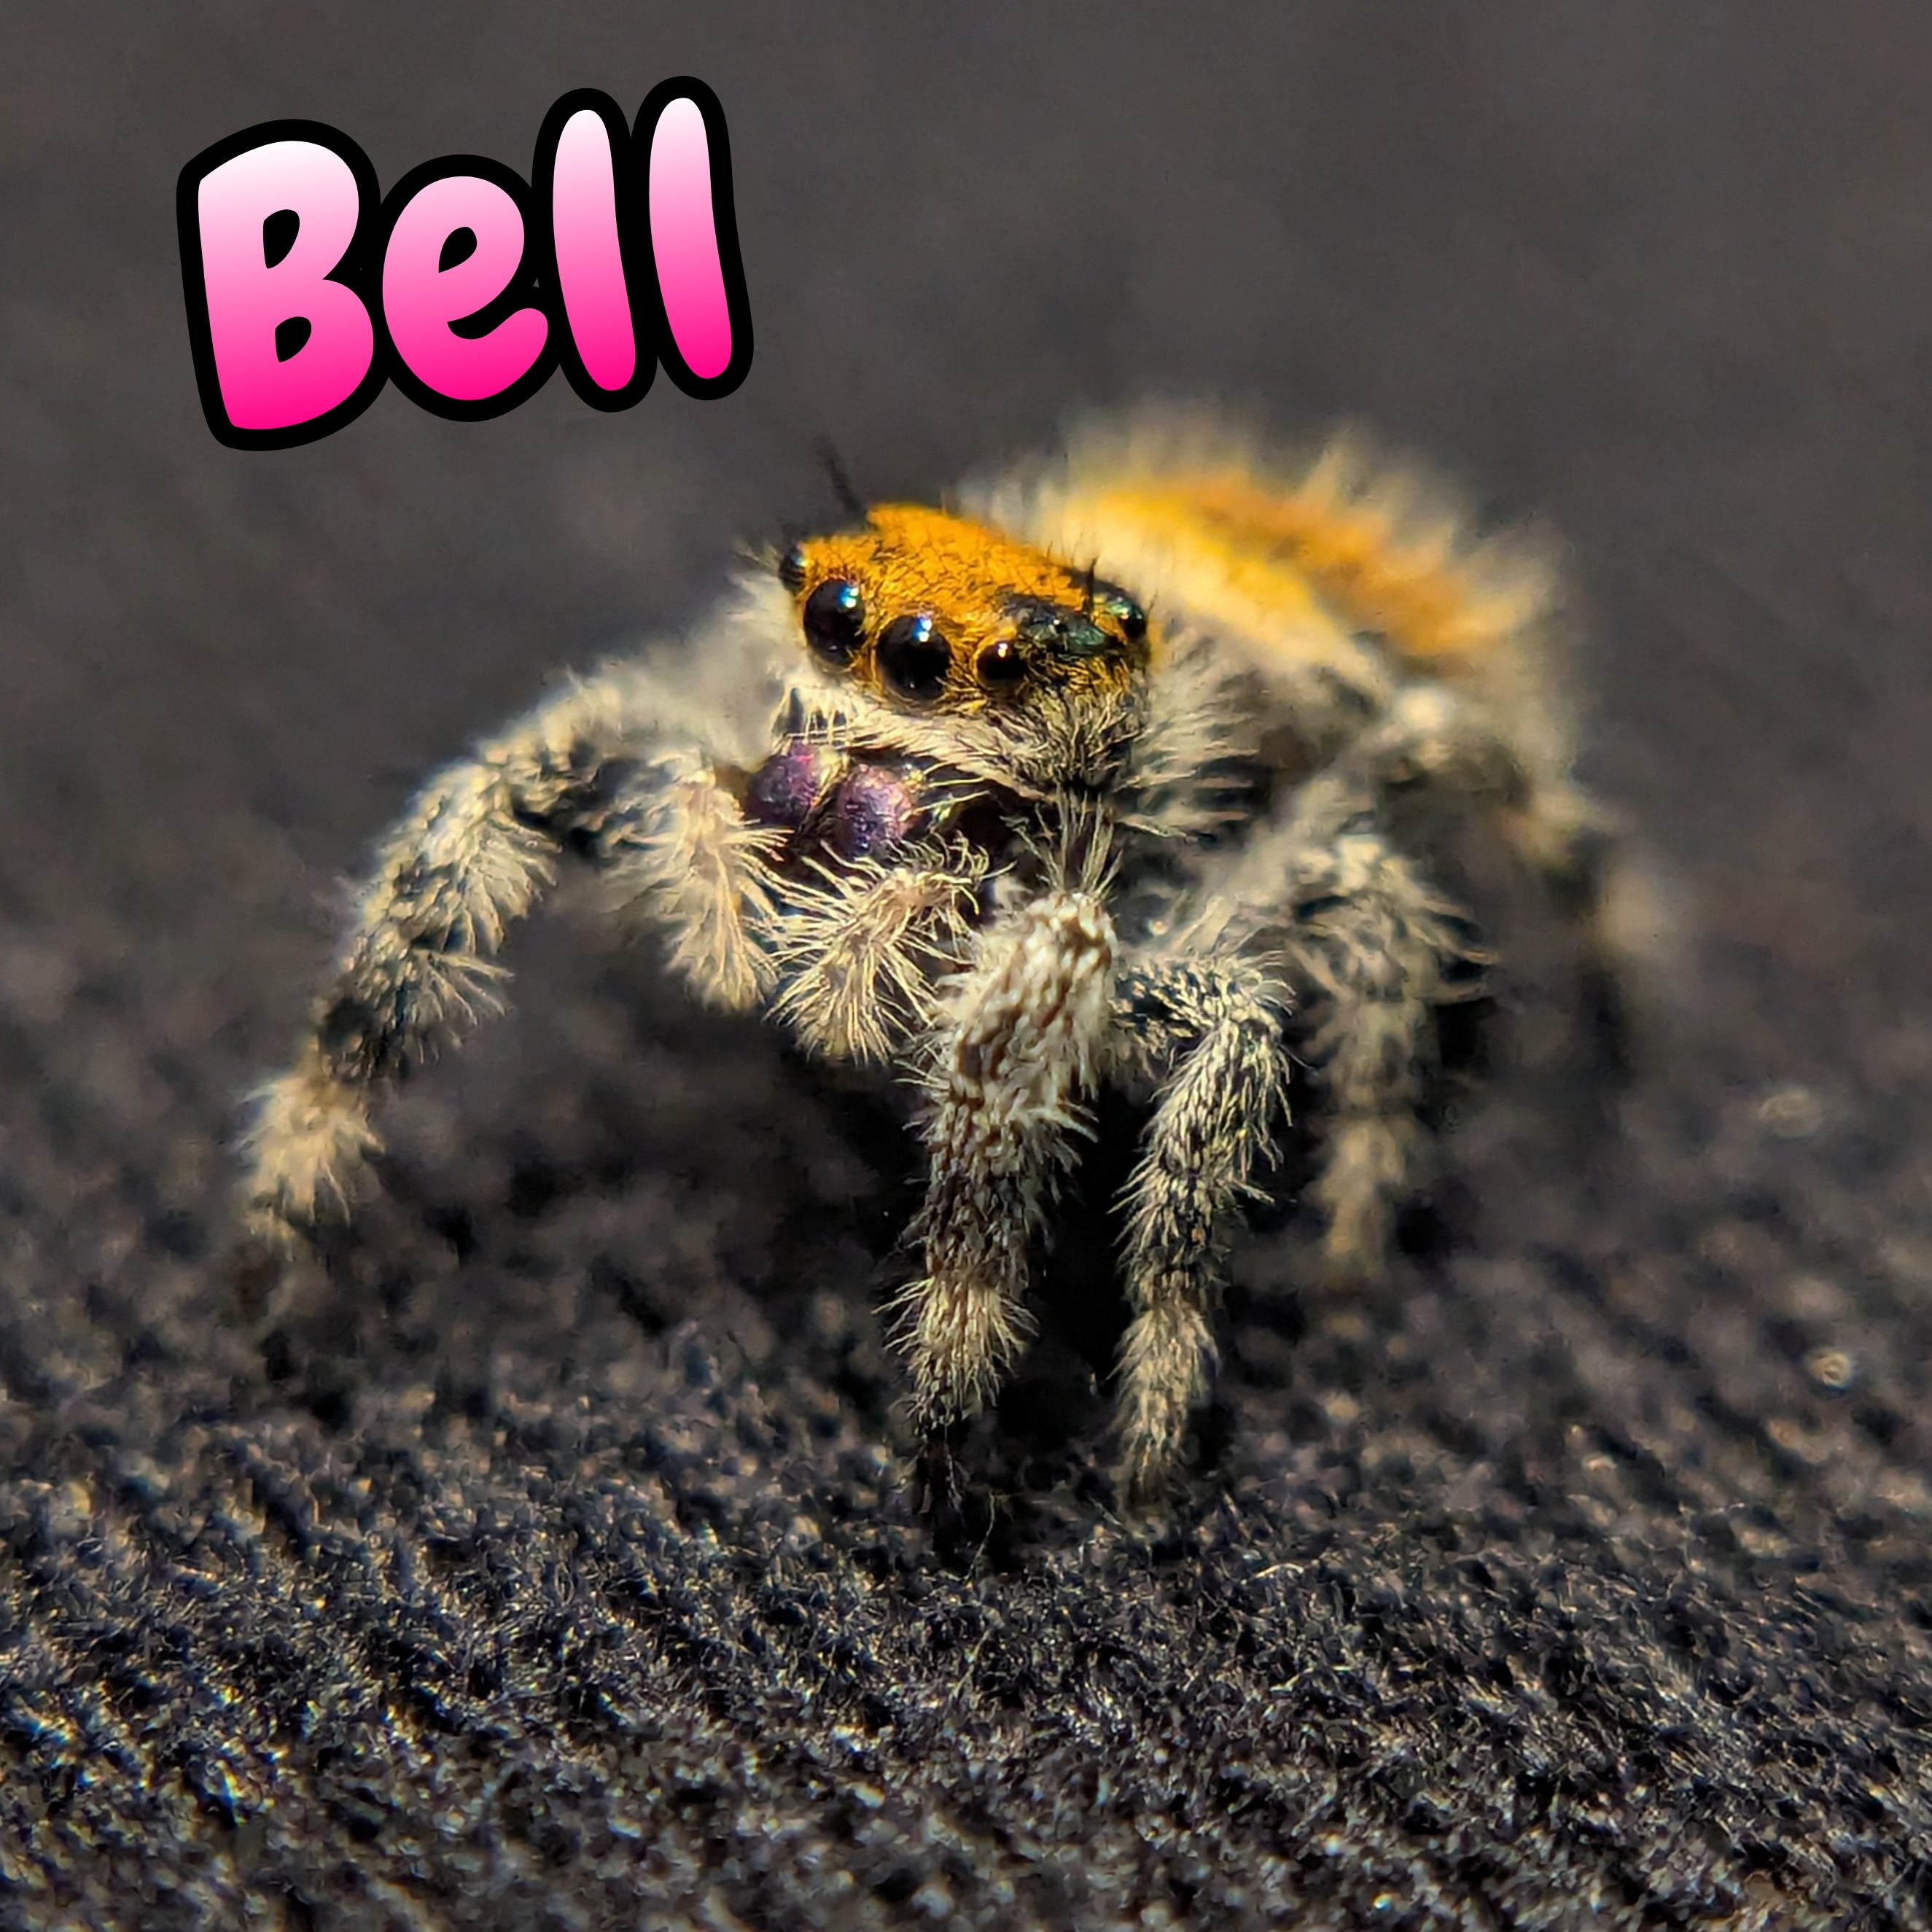 Regal Jumping Spider "Bell"